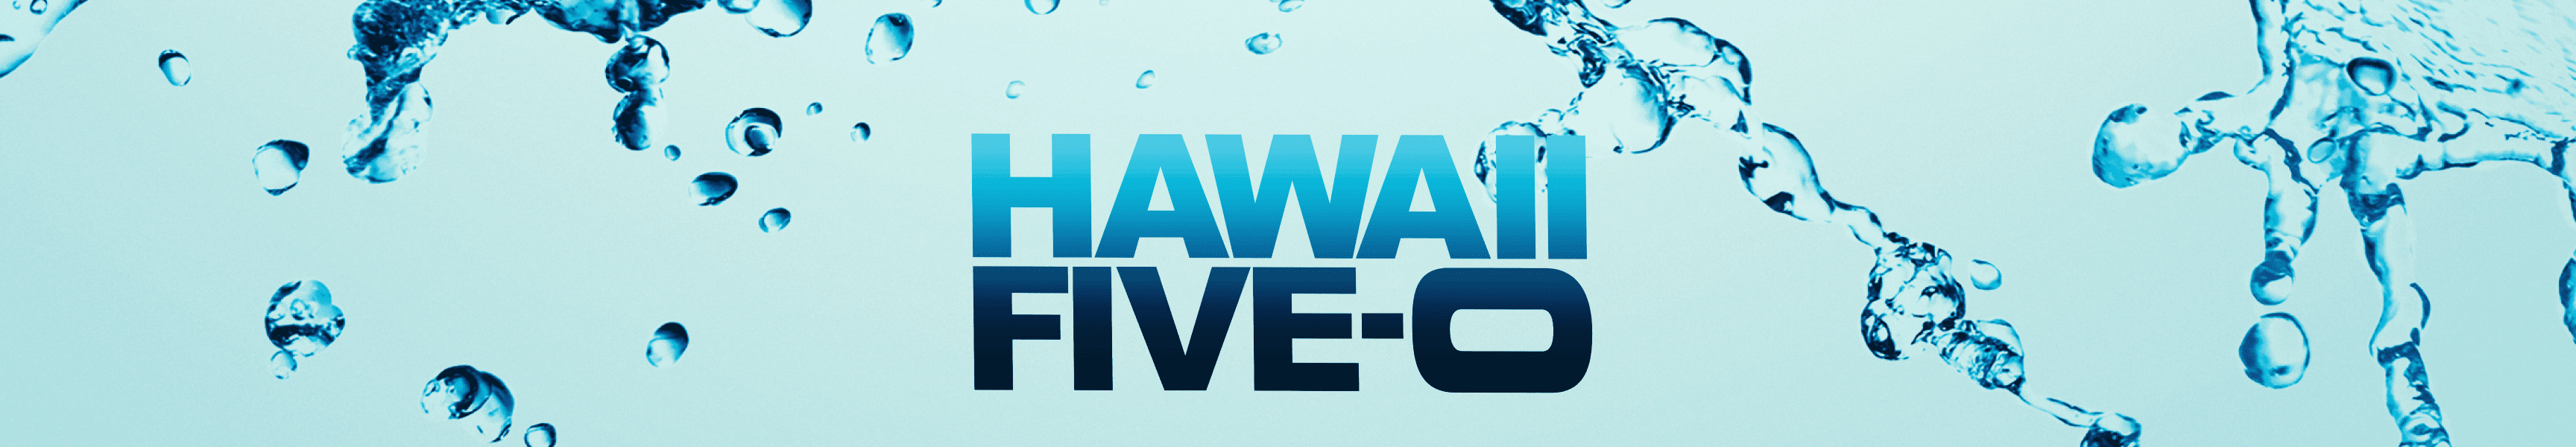 Hawaii cinco-0